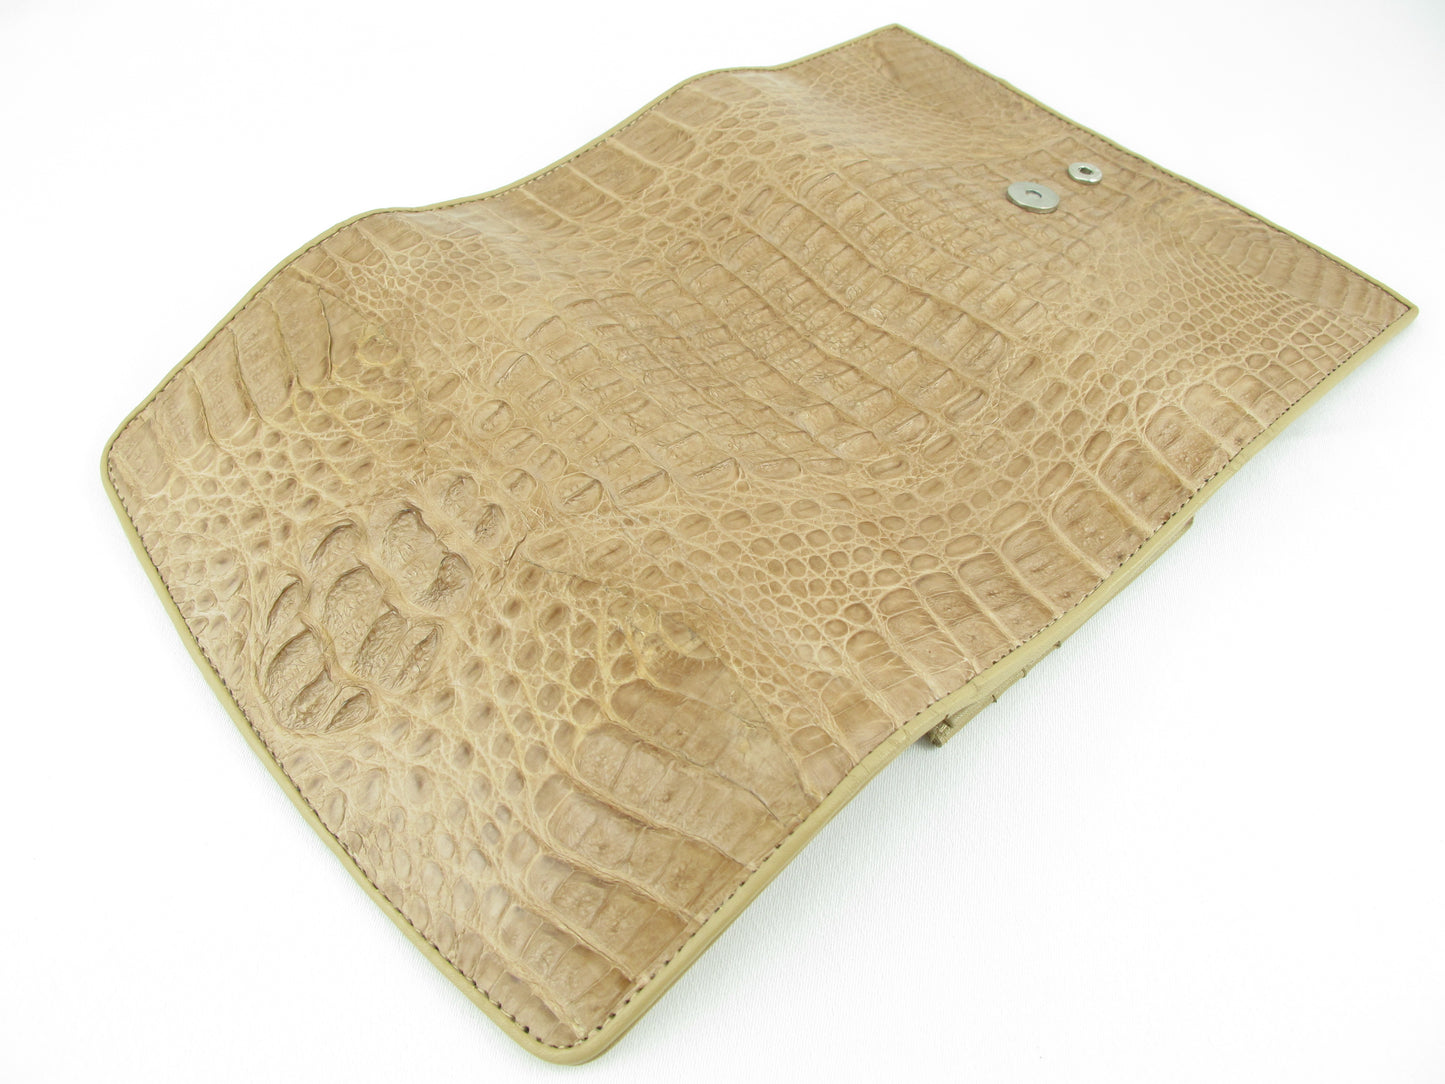 Genuine Caiman Crocodile Hornback Skin Leather Women's Trifold Clutch Wallet Purse